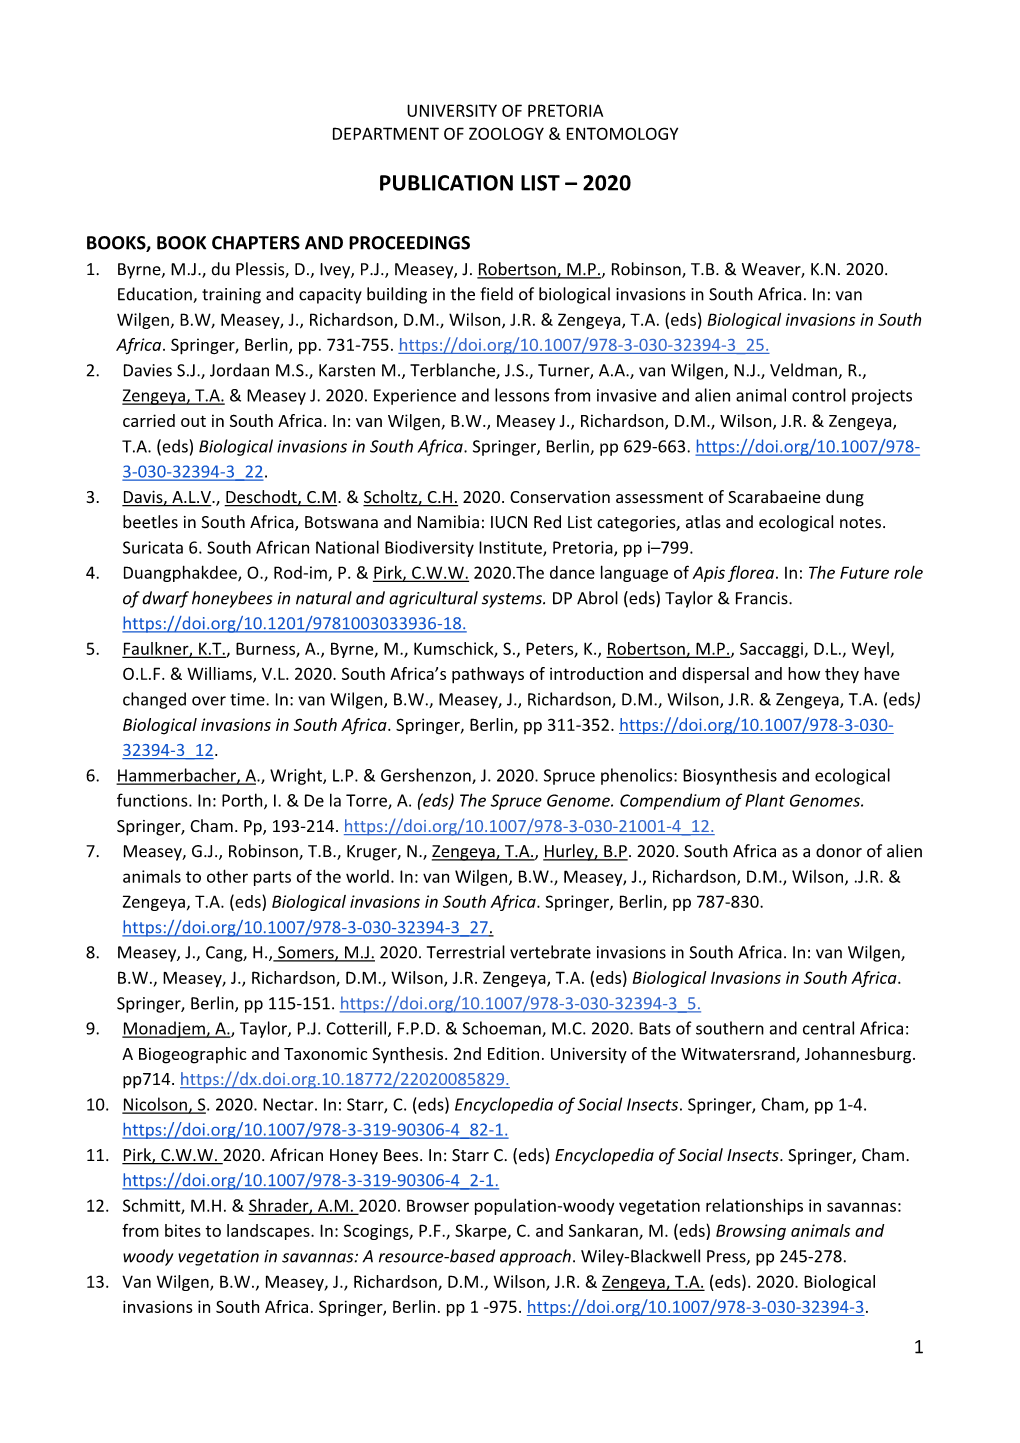 Publication List – 2020